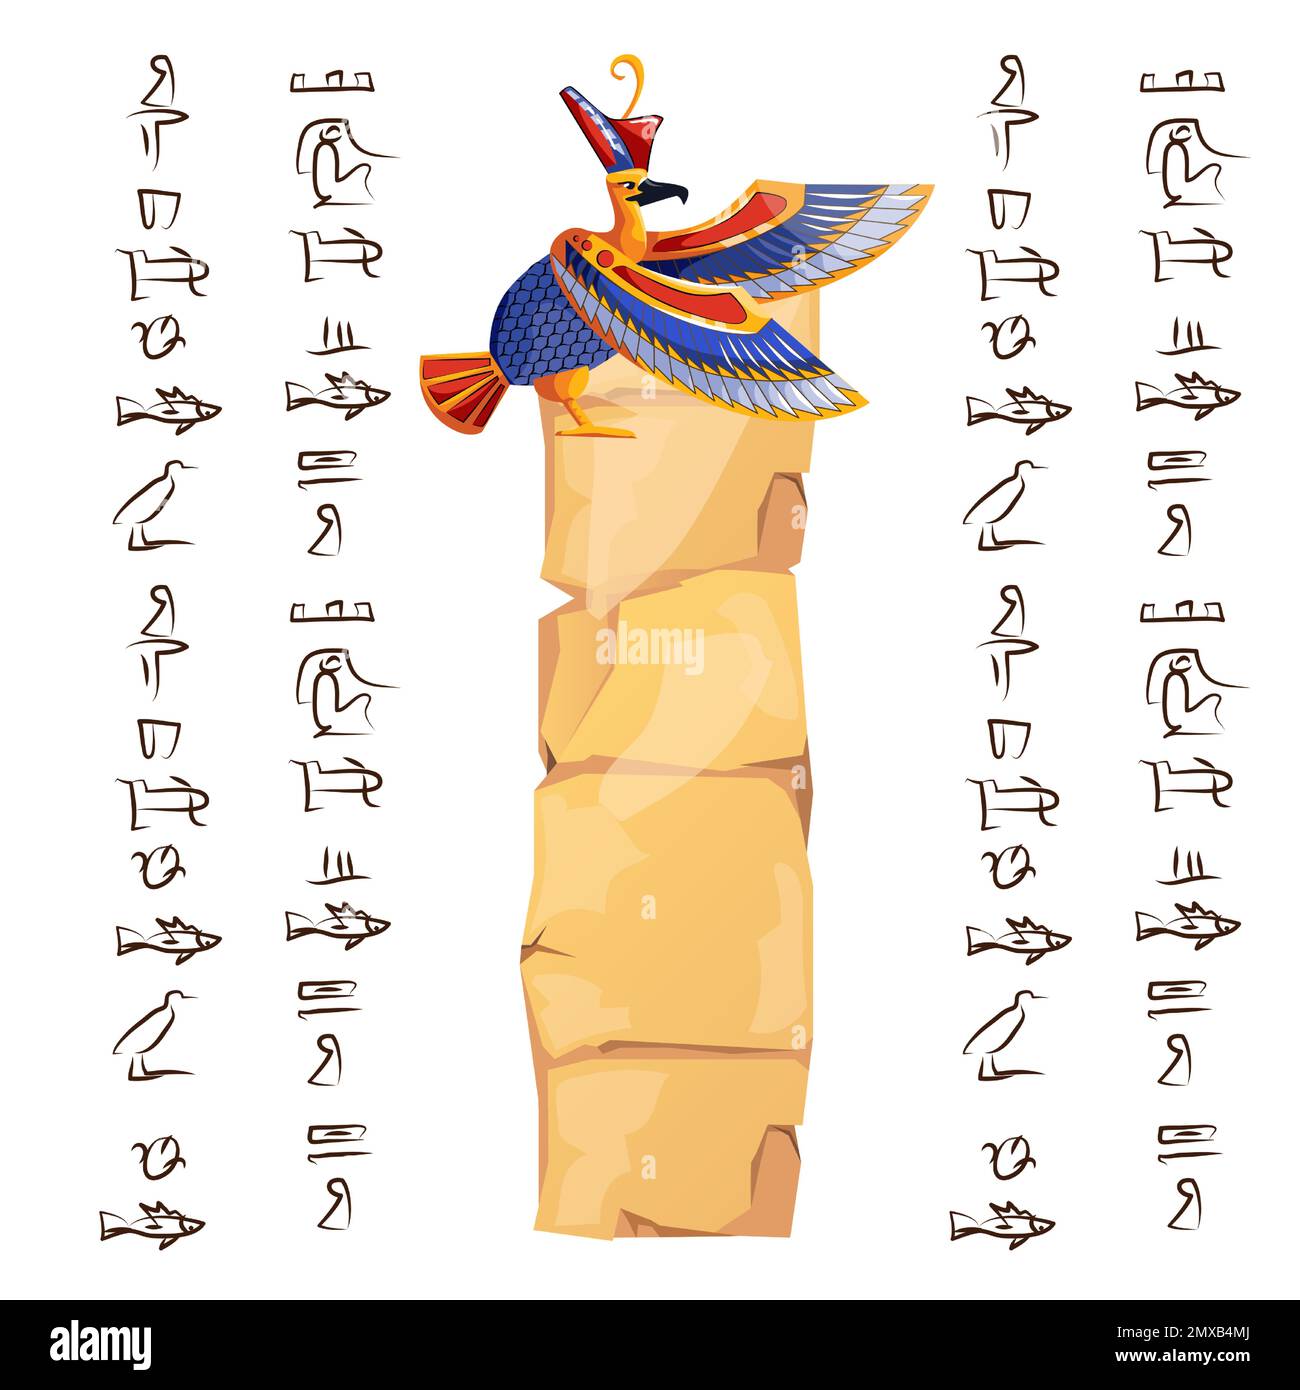 Papyrus-Teil oder Steinsäule aus dem alten Ägypten mit Vektordarstellung der heiligen Vogelfigur. Ägyptisches Kultursymbol, unbeschriftetes, antikes Papier mit Falken und Hieroglyphen, isoliert auf Weiß Stock Vektor